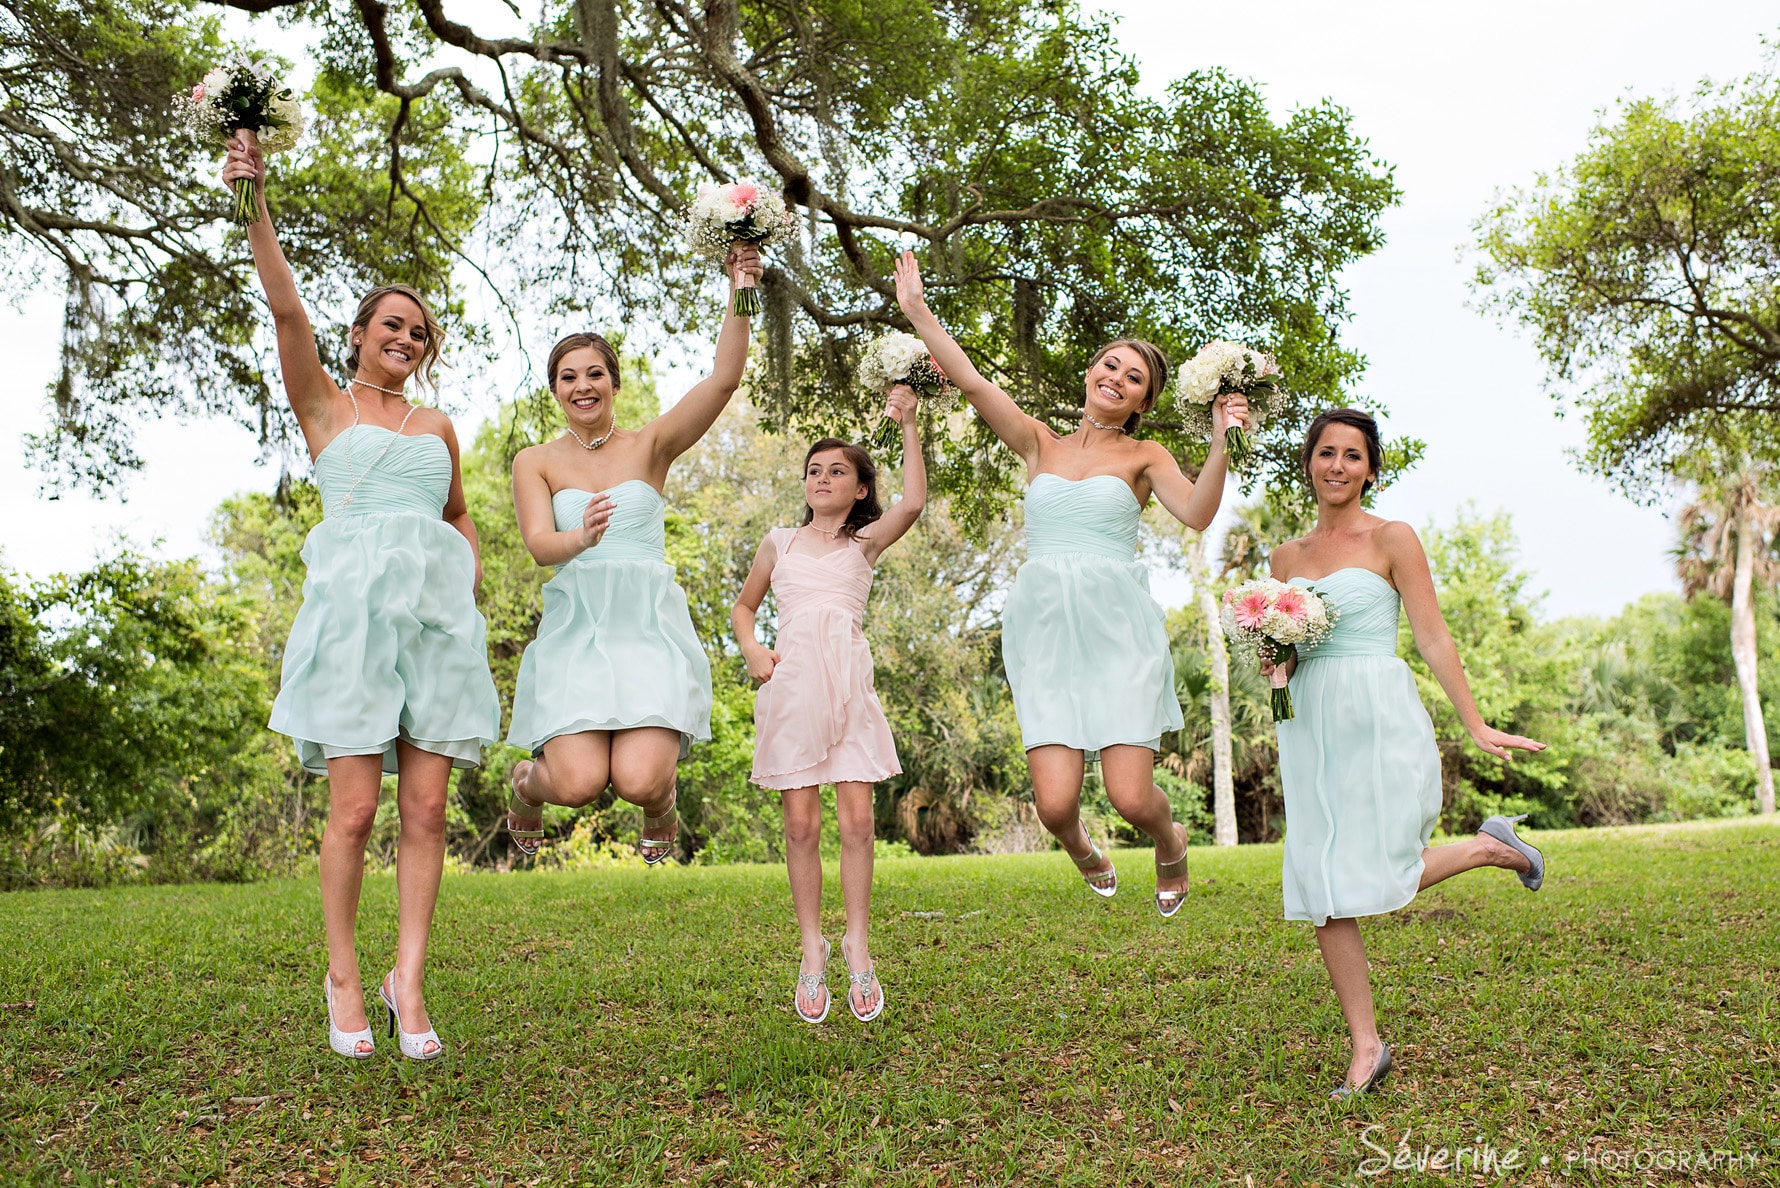 jumping teal bridal party